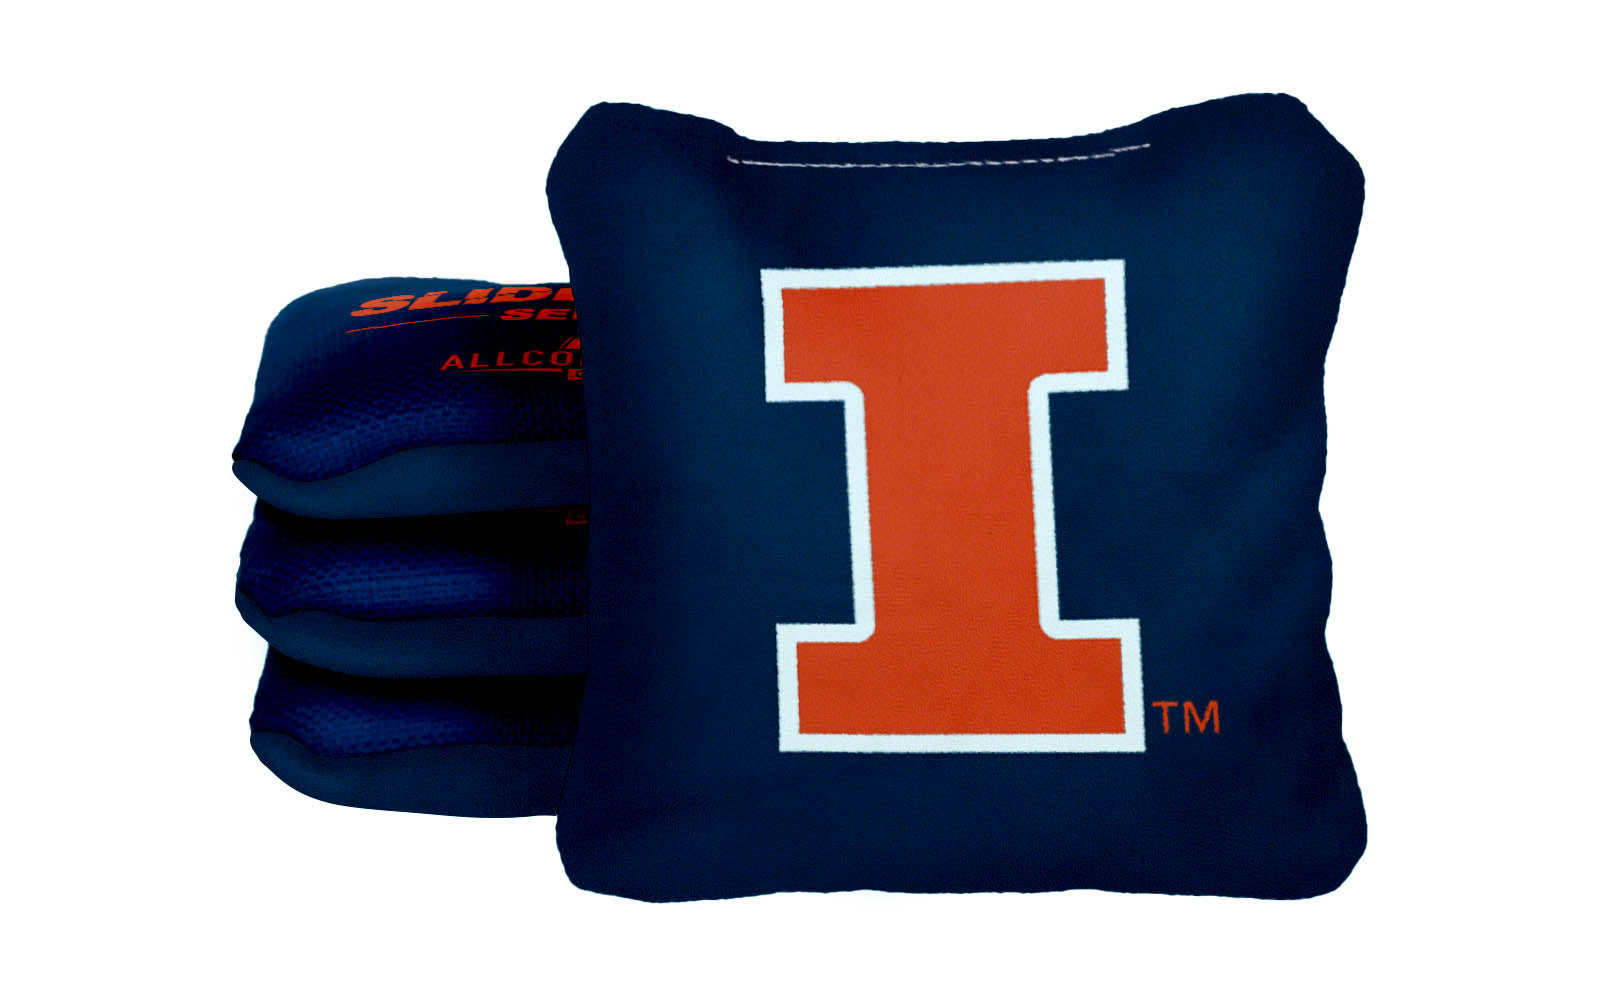 Officially Licensed Collegiate Cornhole Bags - AllCornhole Slide Rite - Set of 4 - University of Illinois